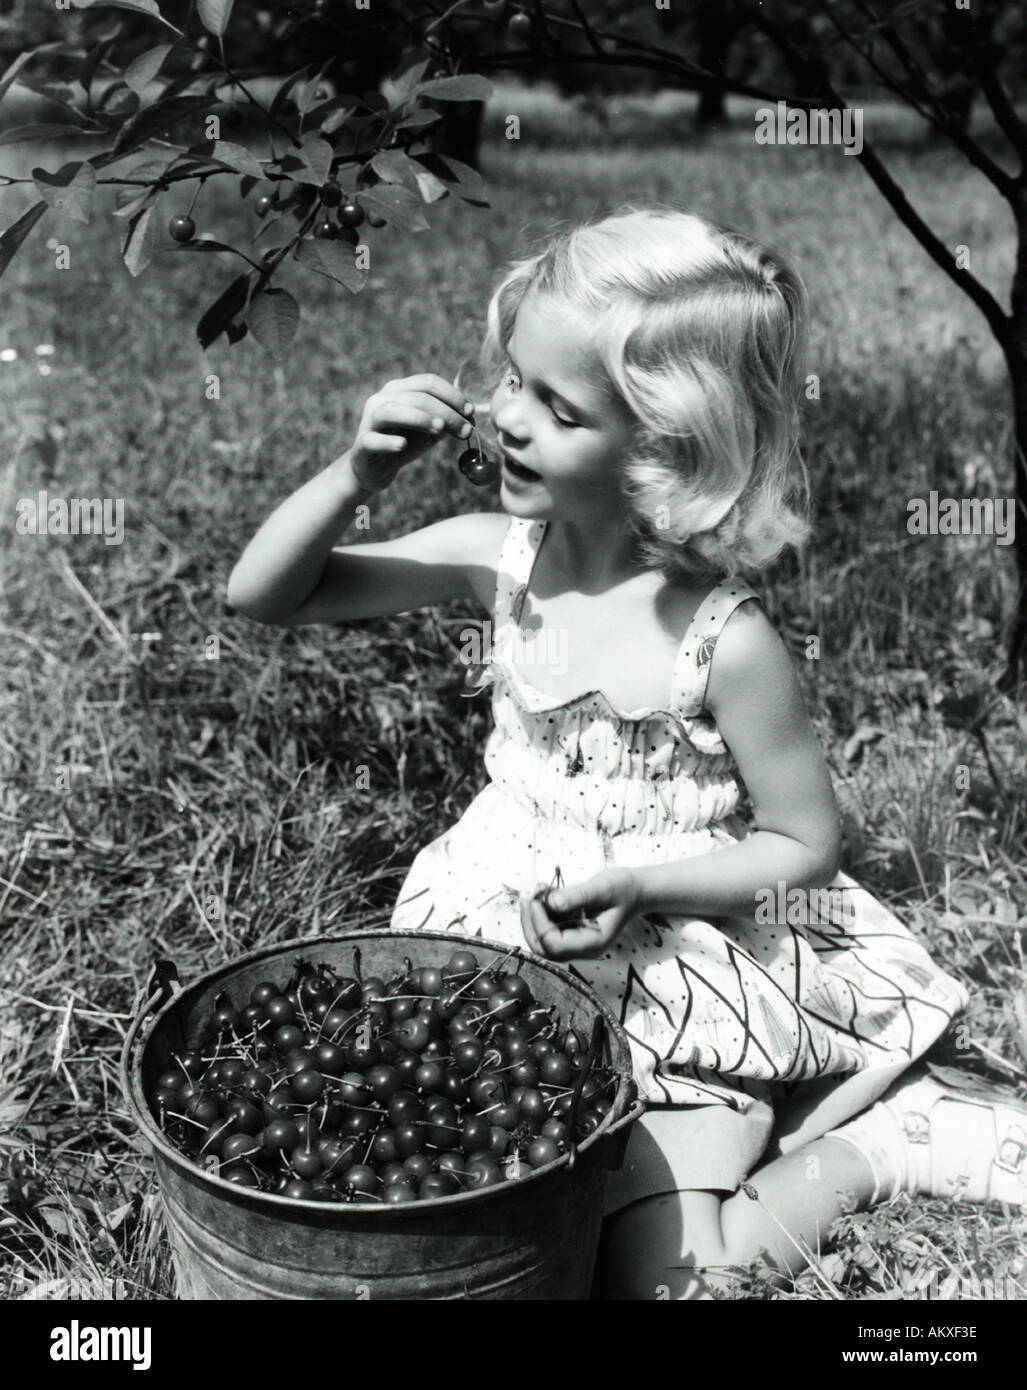 Ragazza giovane Mangiare le ciliegie dalla benna di raccolta in Orchard 1950 s Foto Stock